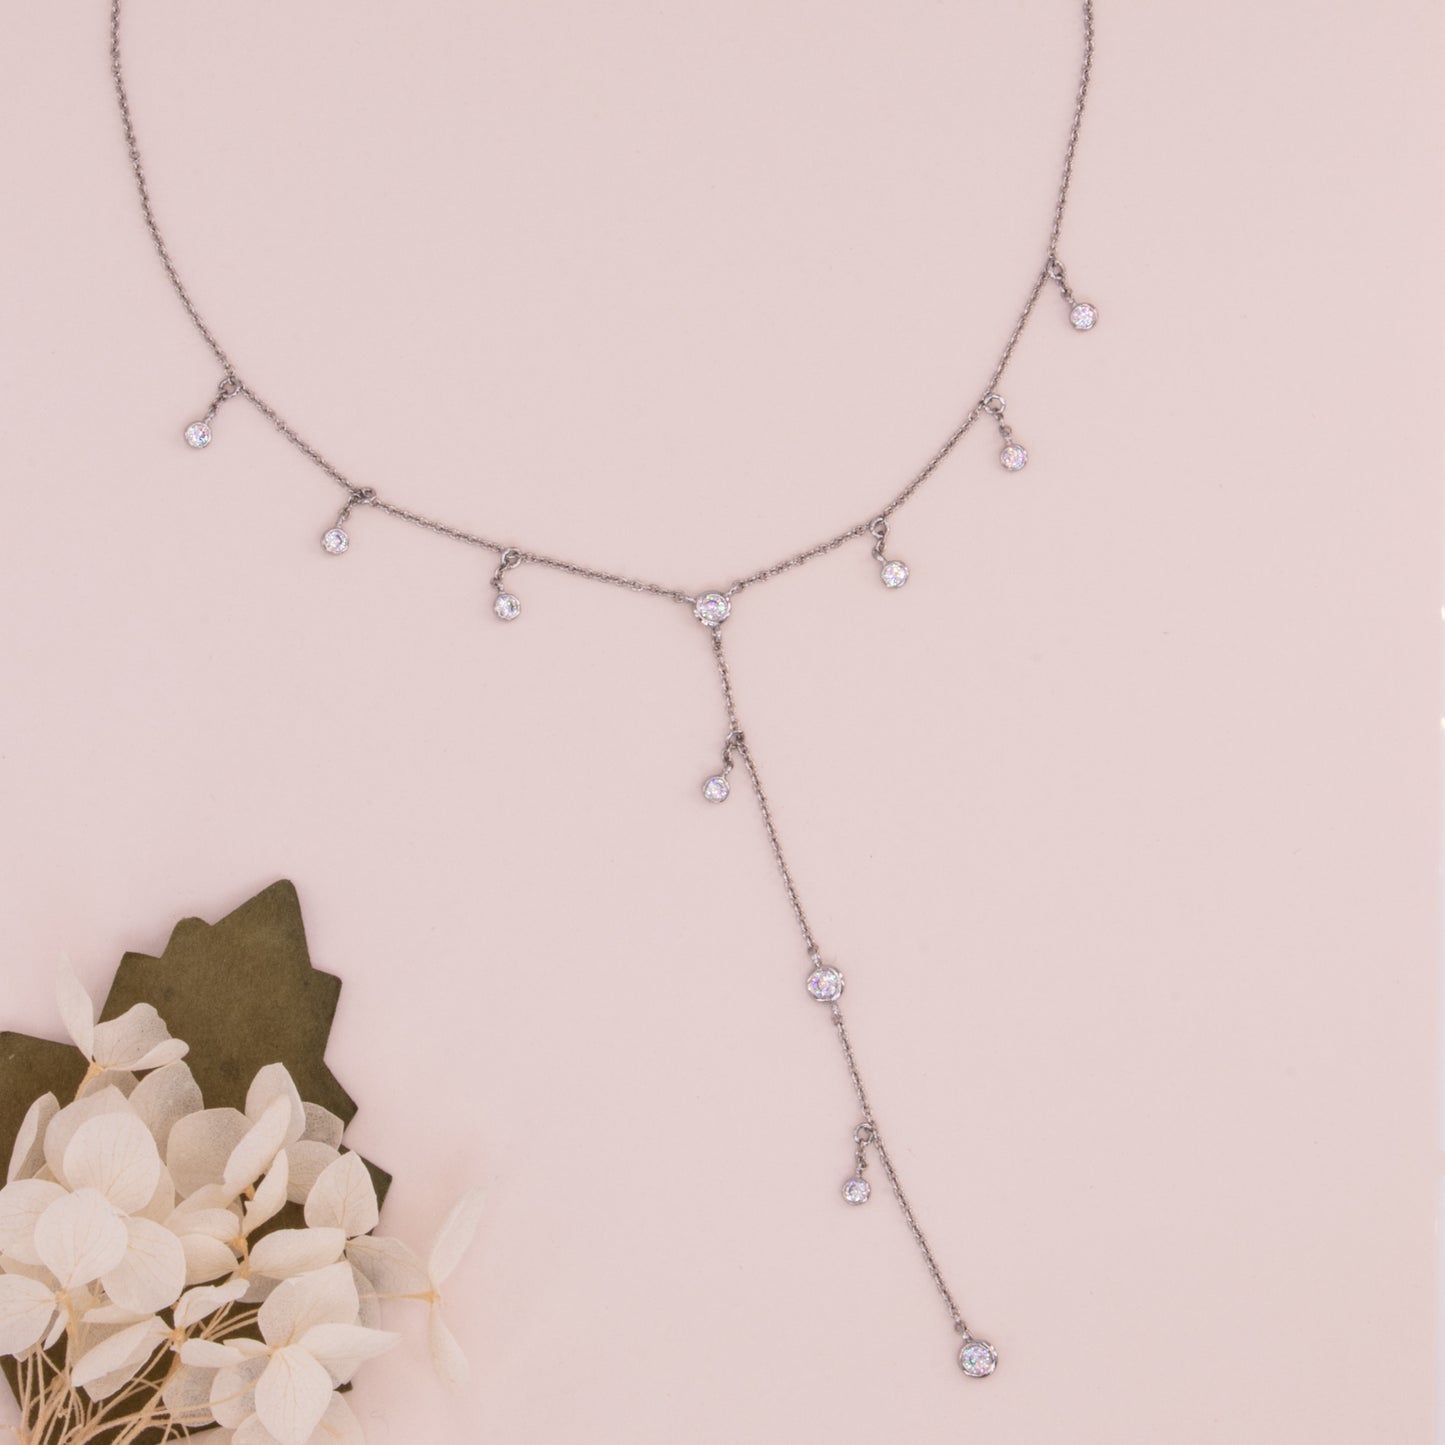 Dangling Y necklace